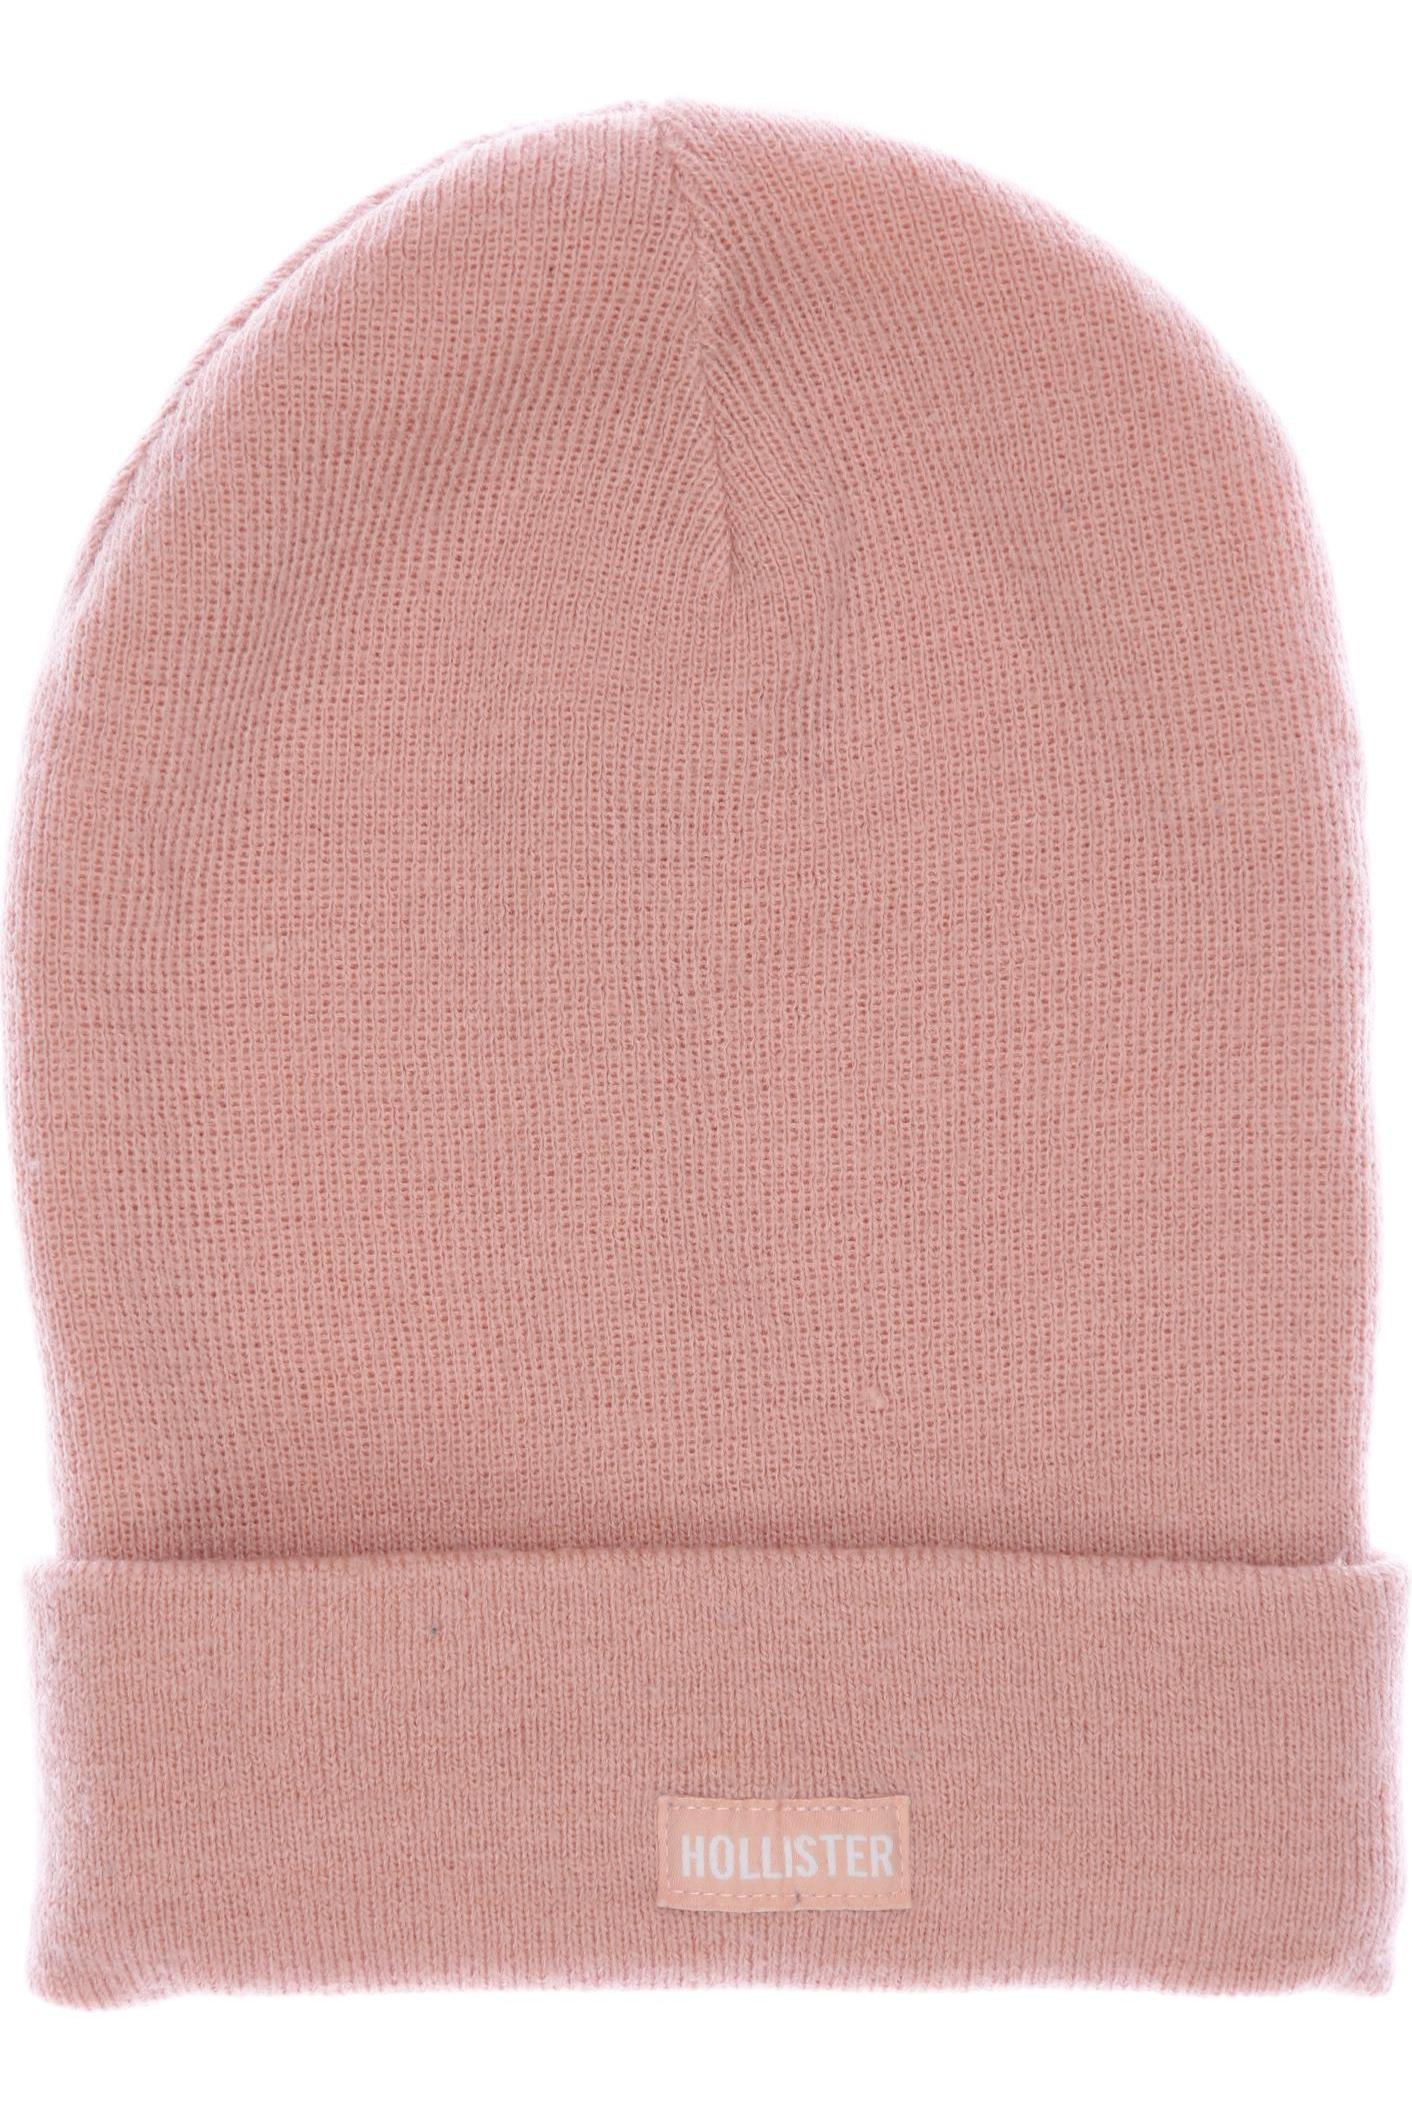 Hollister Damen Hut/Mütze, pink, Gr. uni von Hollister